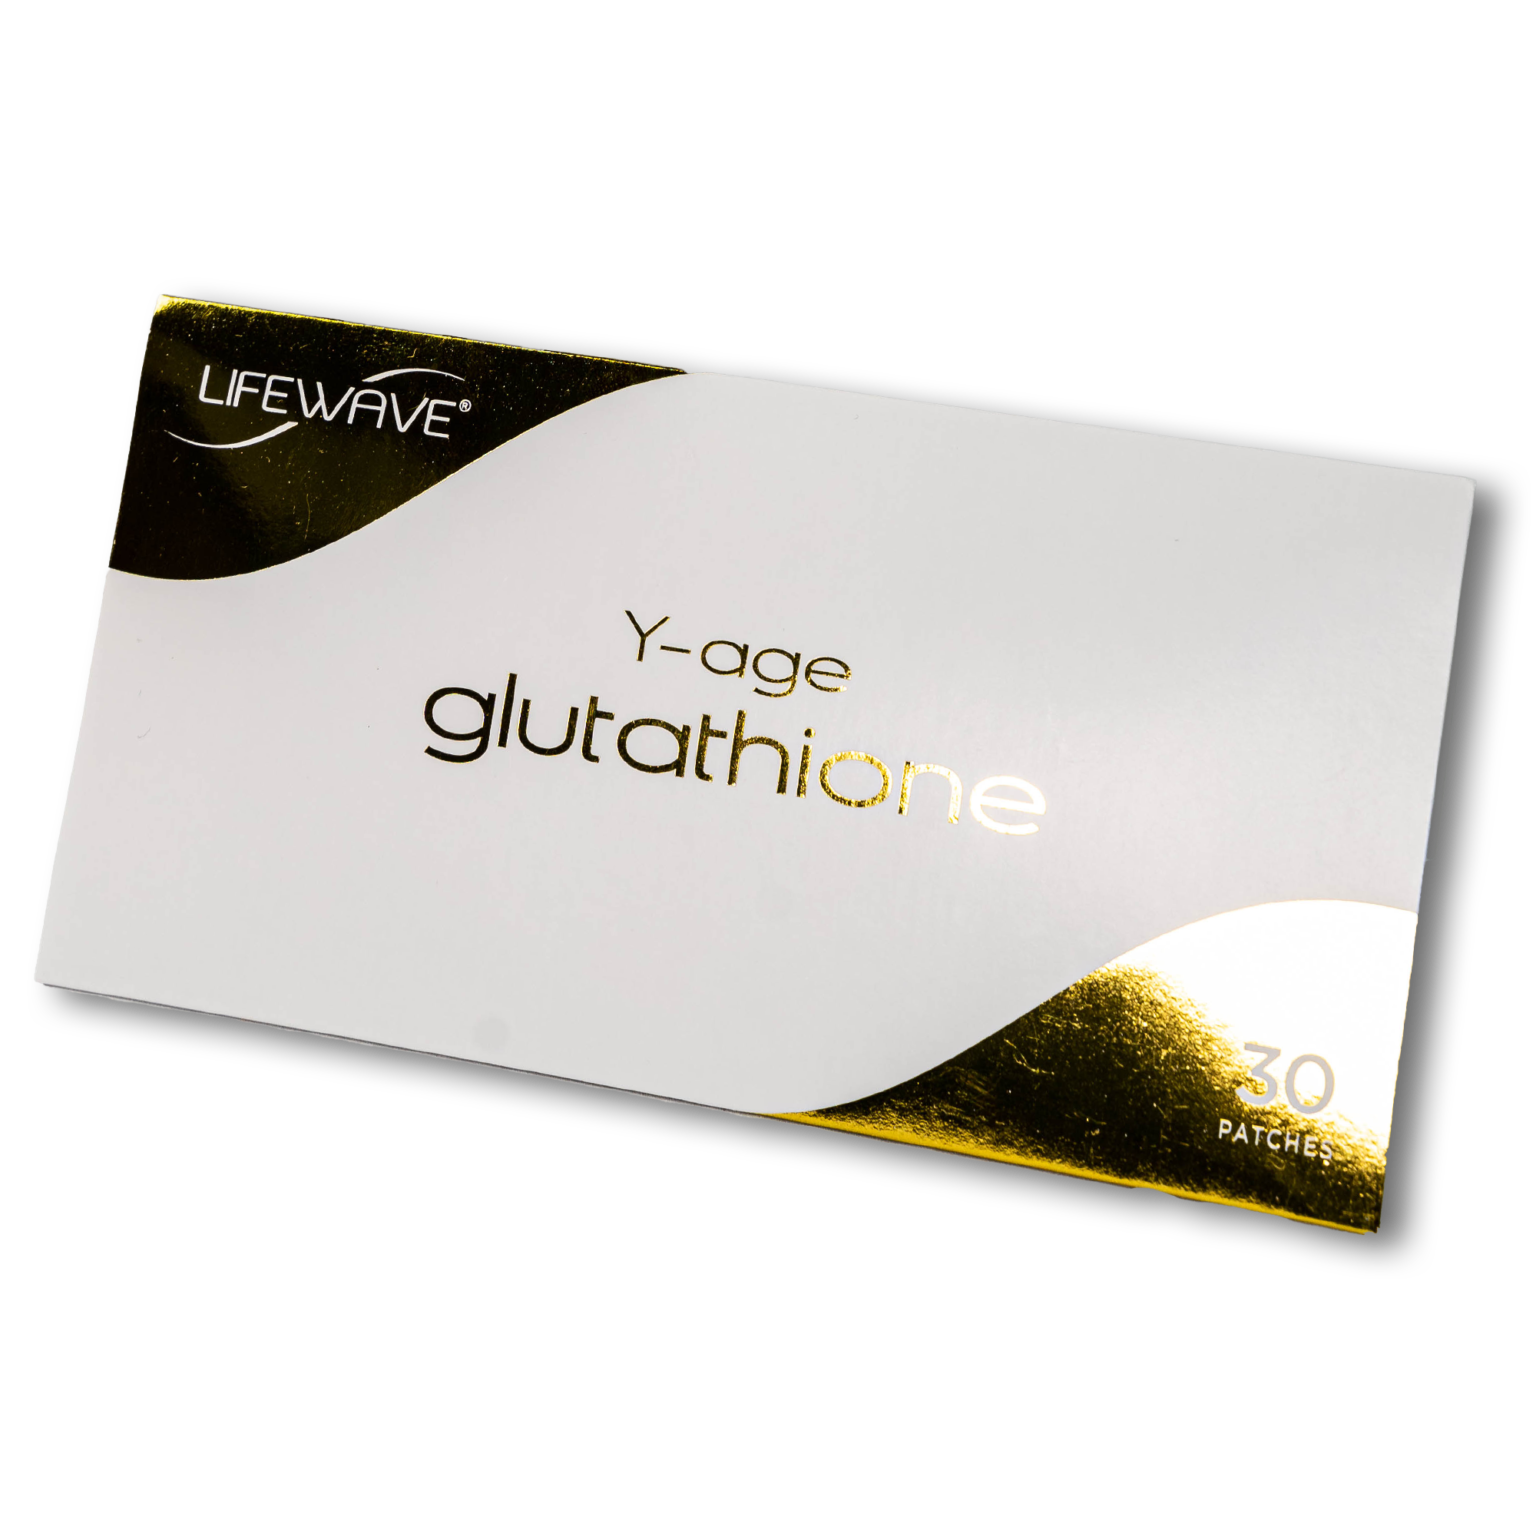 Lifewave – Y-age glutathione – Shop-Bewusstsein